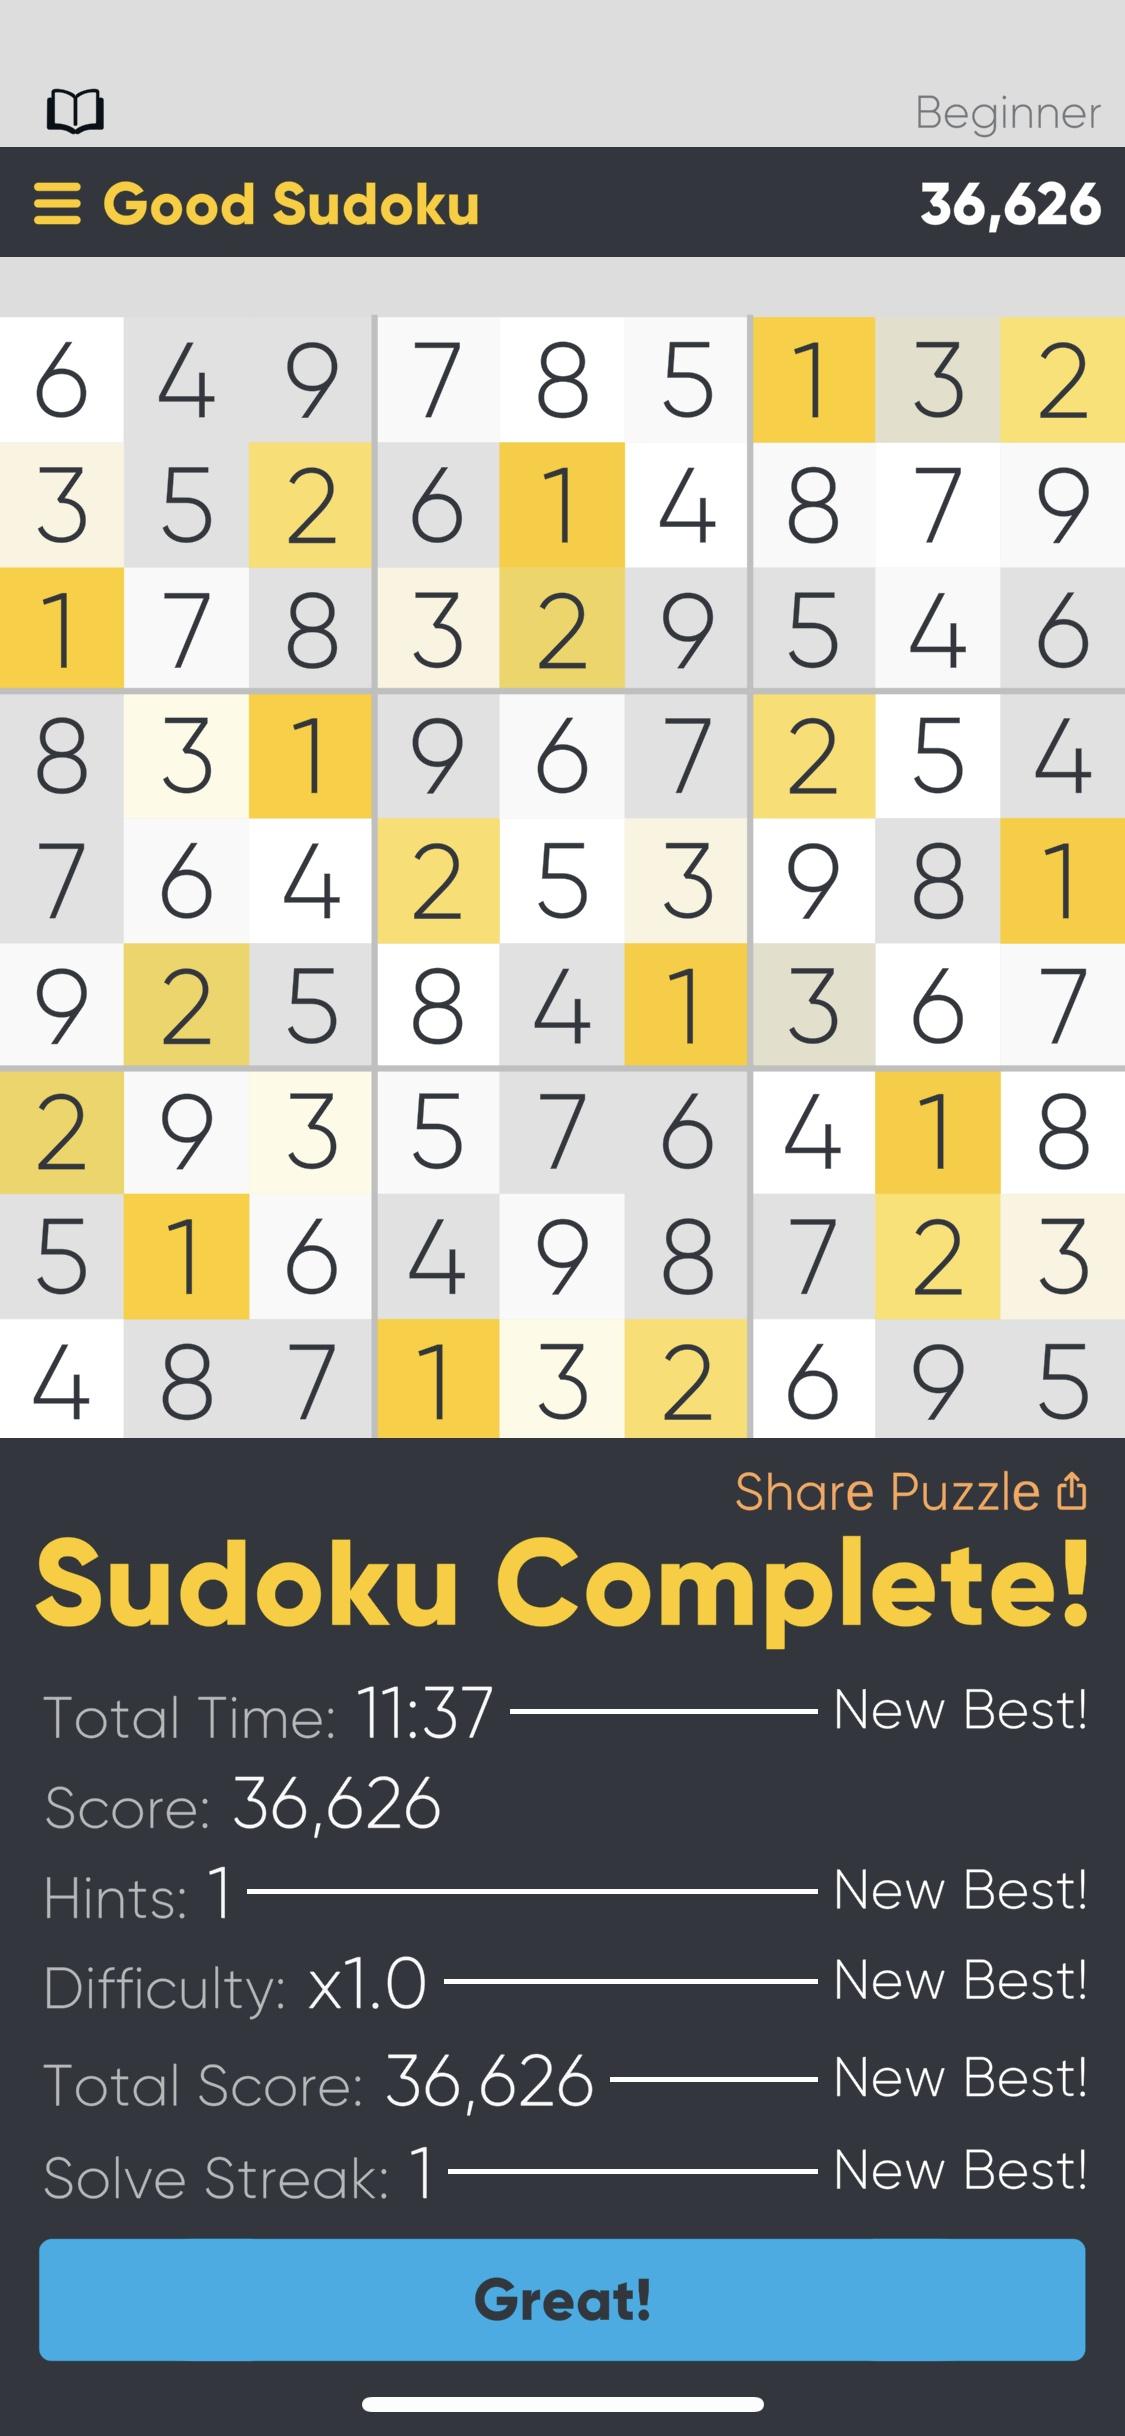 Good Sudoku by Zach Gage  